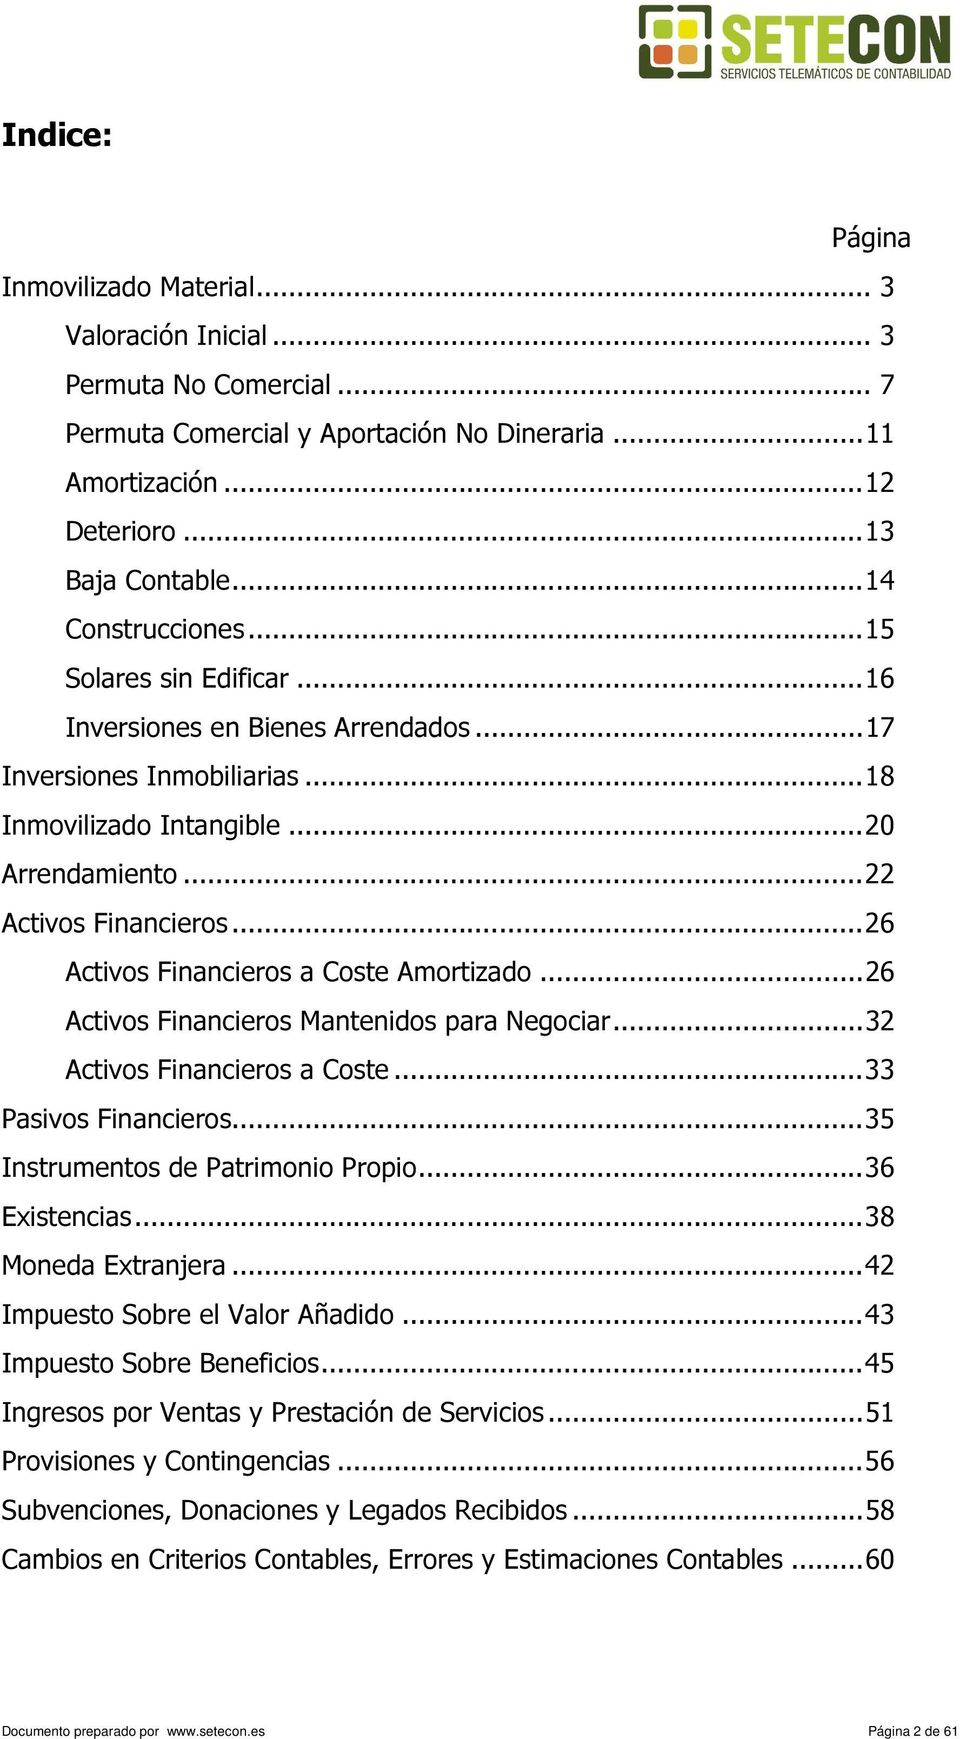 ..26 Activos Financieros a Coste Amortizado...26 Activos Financieros Mantenidos para Negociar...32 Activos Financieros a Coste...33 Pasivos Financieros...35 Instrumentos de Patrimonio Propio.